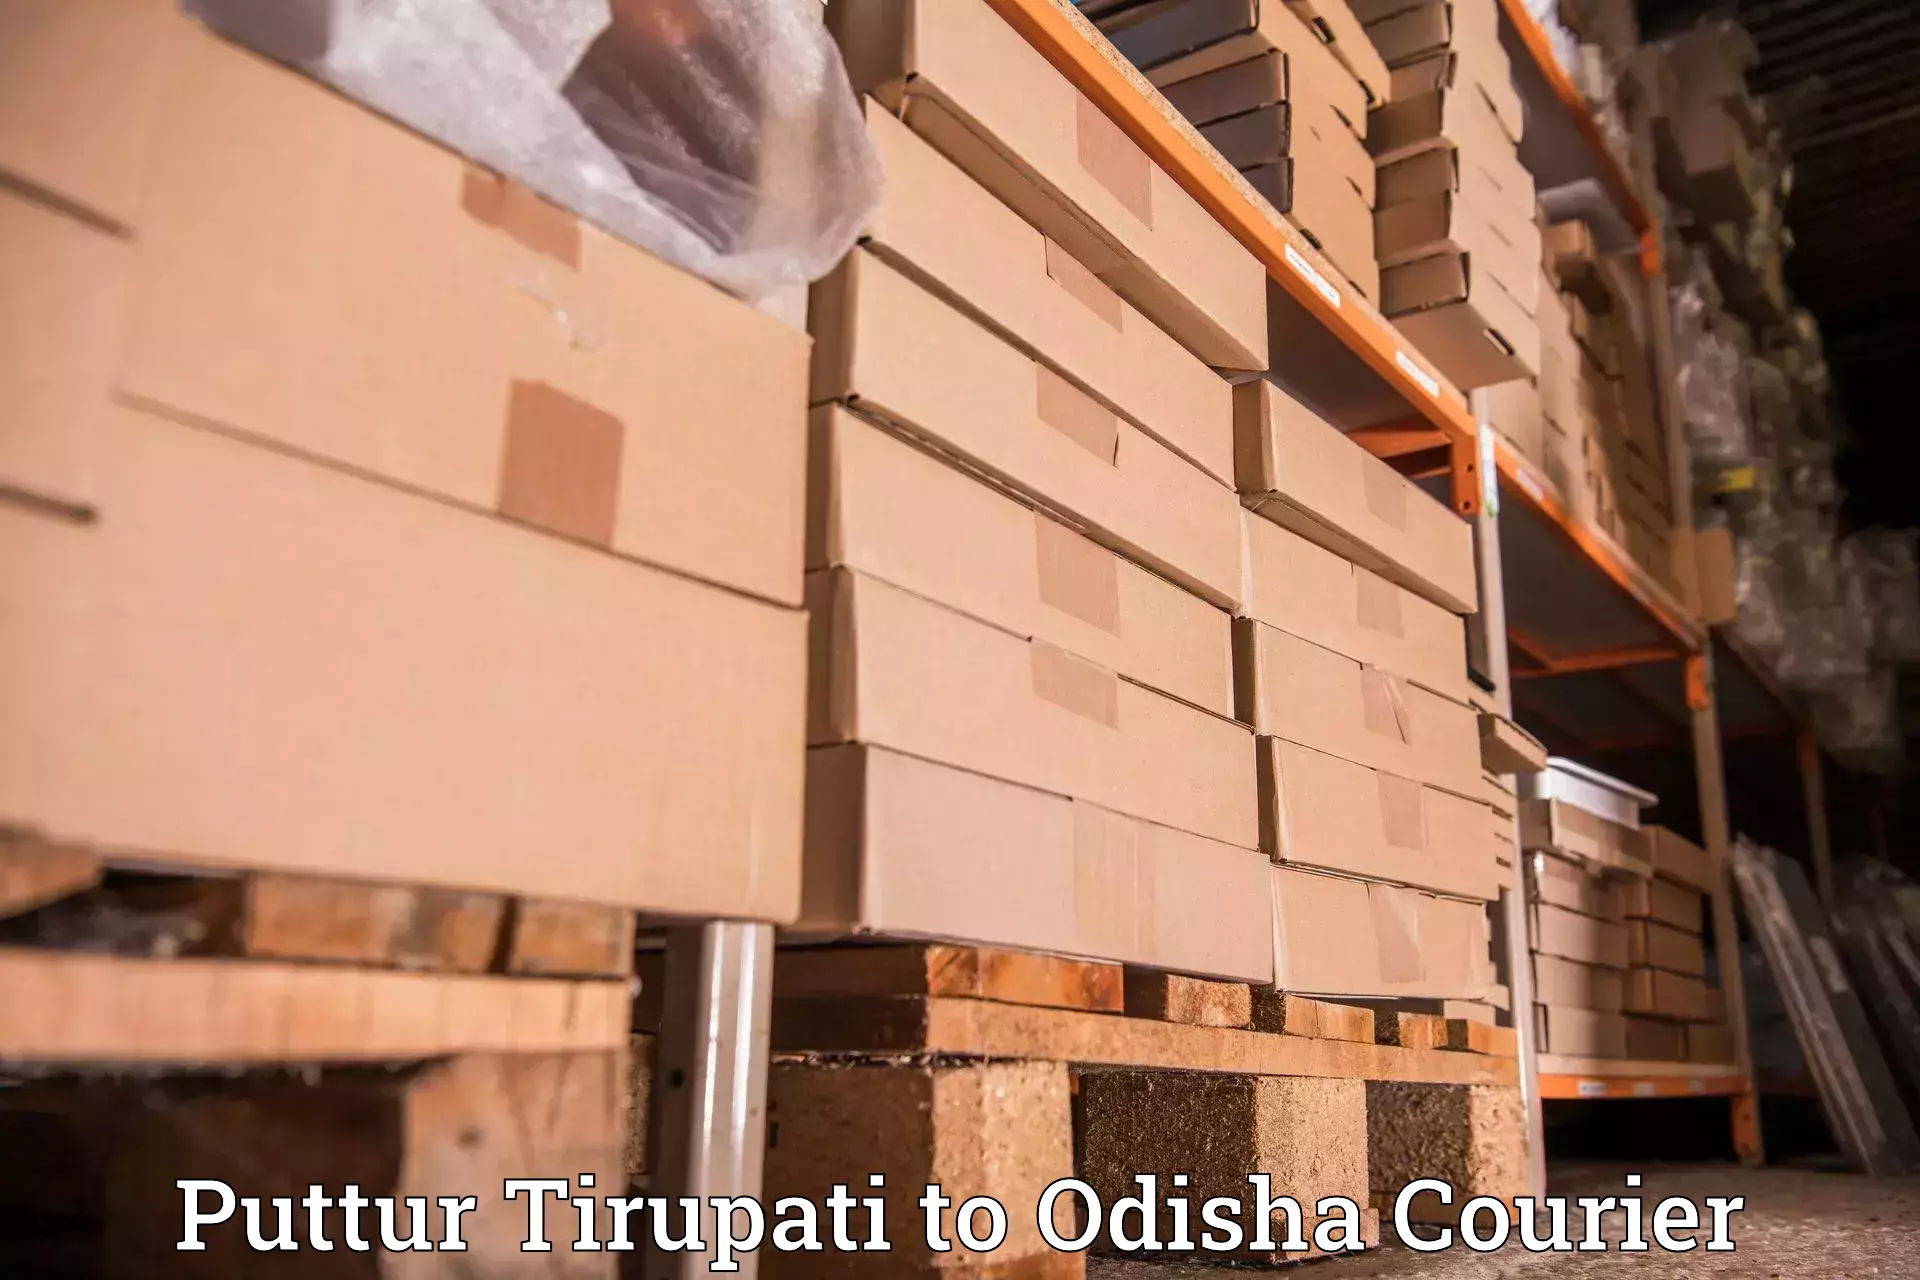 Automated parcel services Puttur Tirupati to Chatrapur